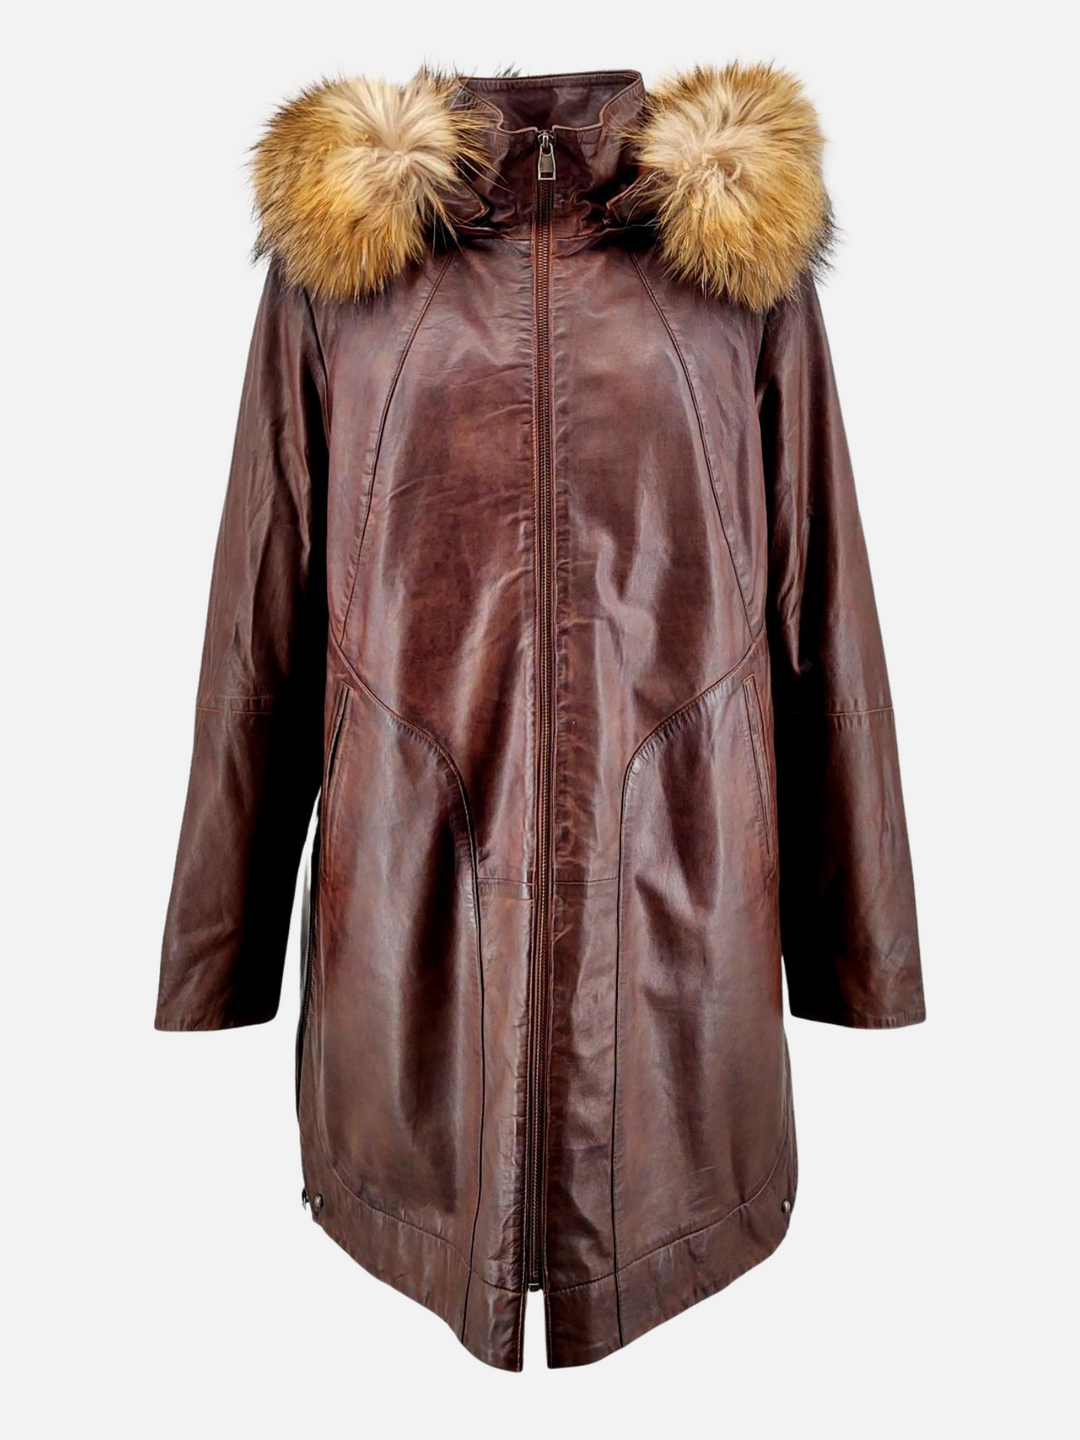 Pia kobber brun læder jakke /frakke med hætte - dame